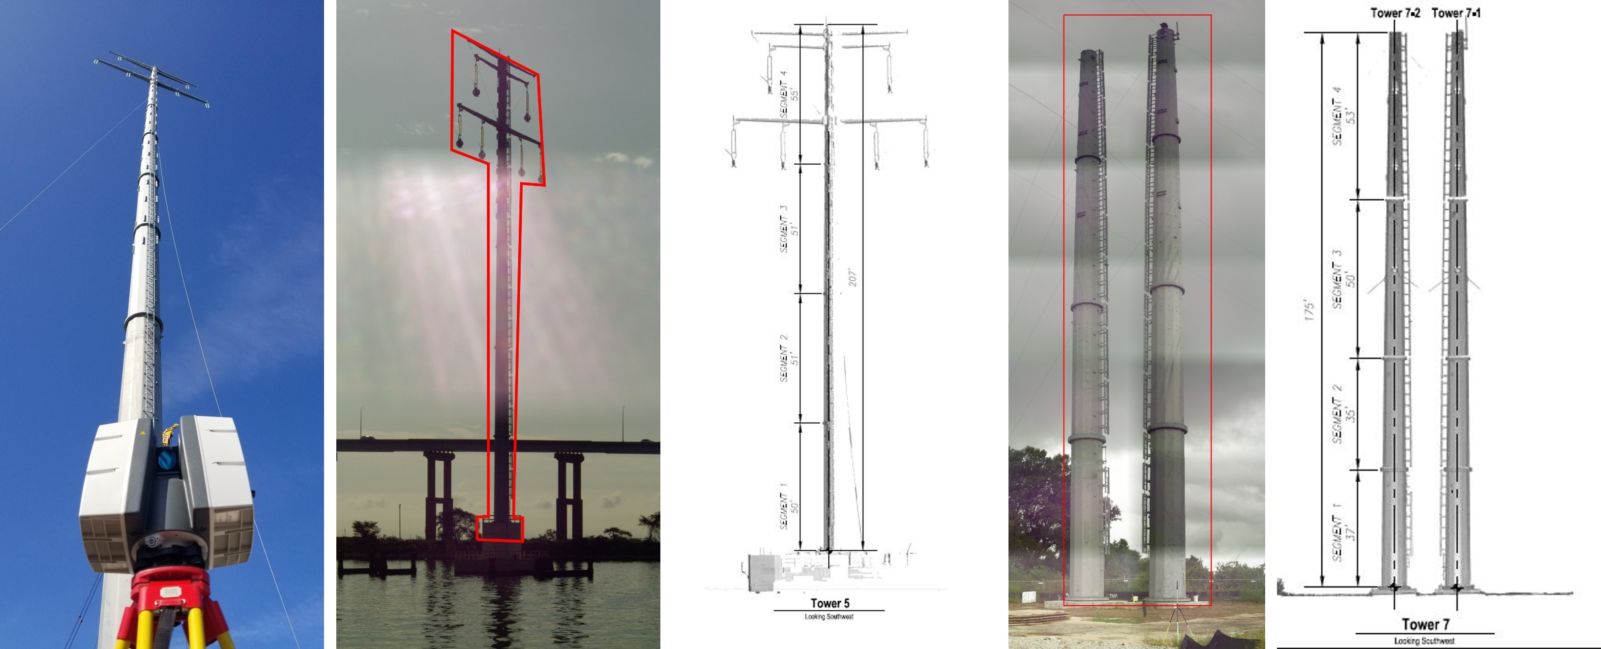 Monopole Tower Plumbness Survey